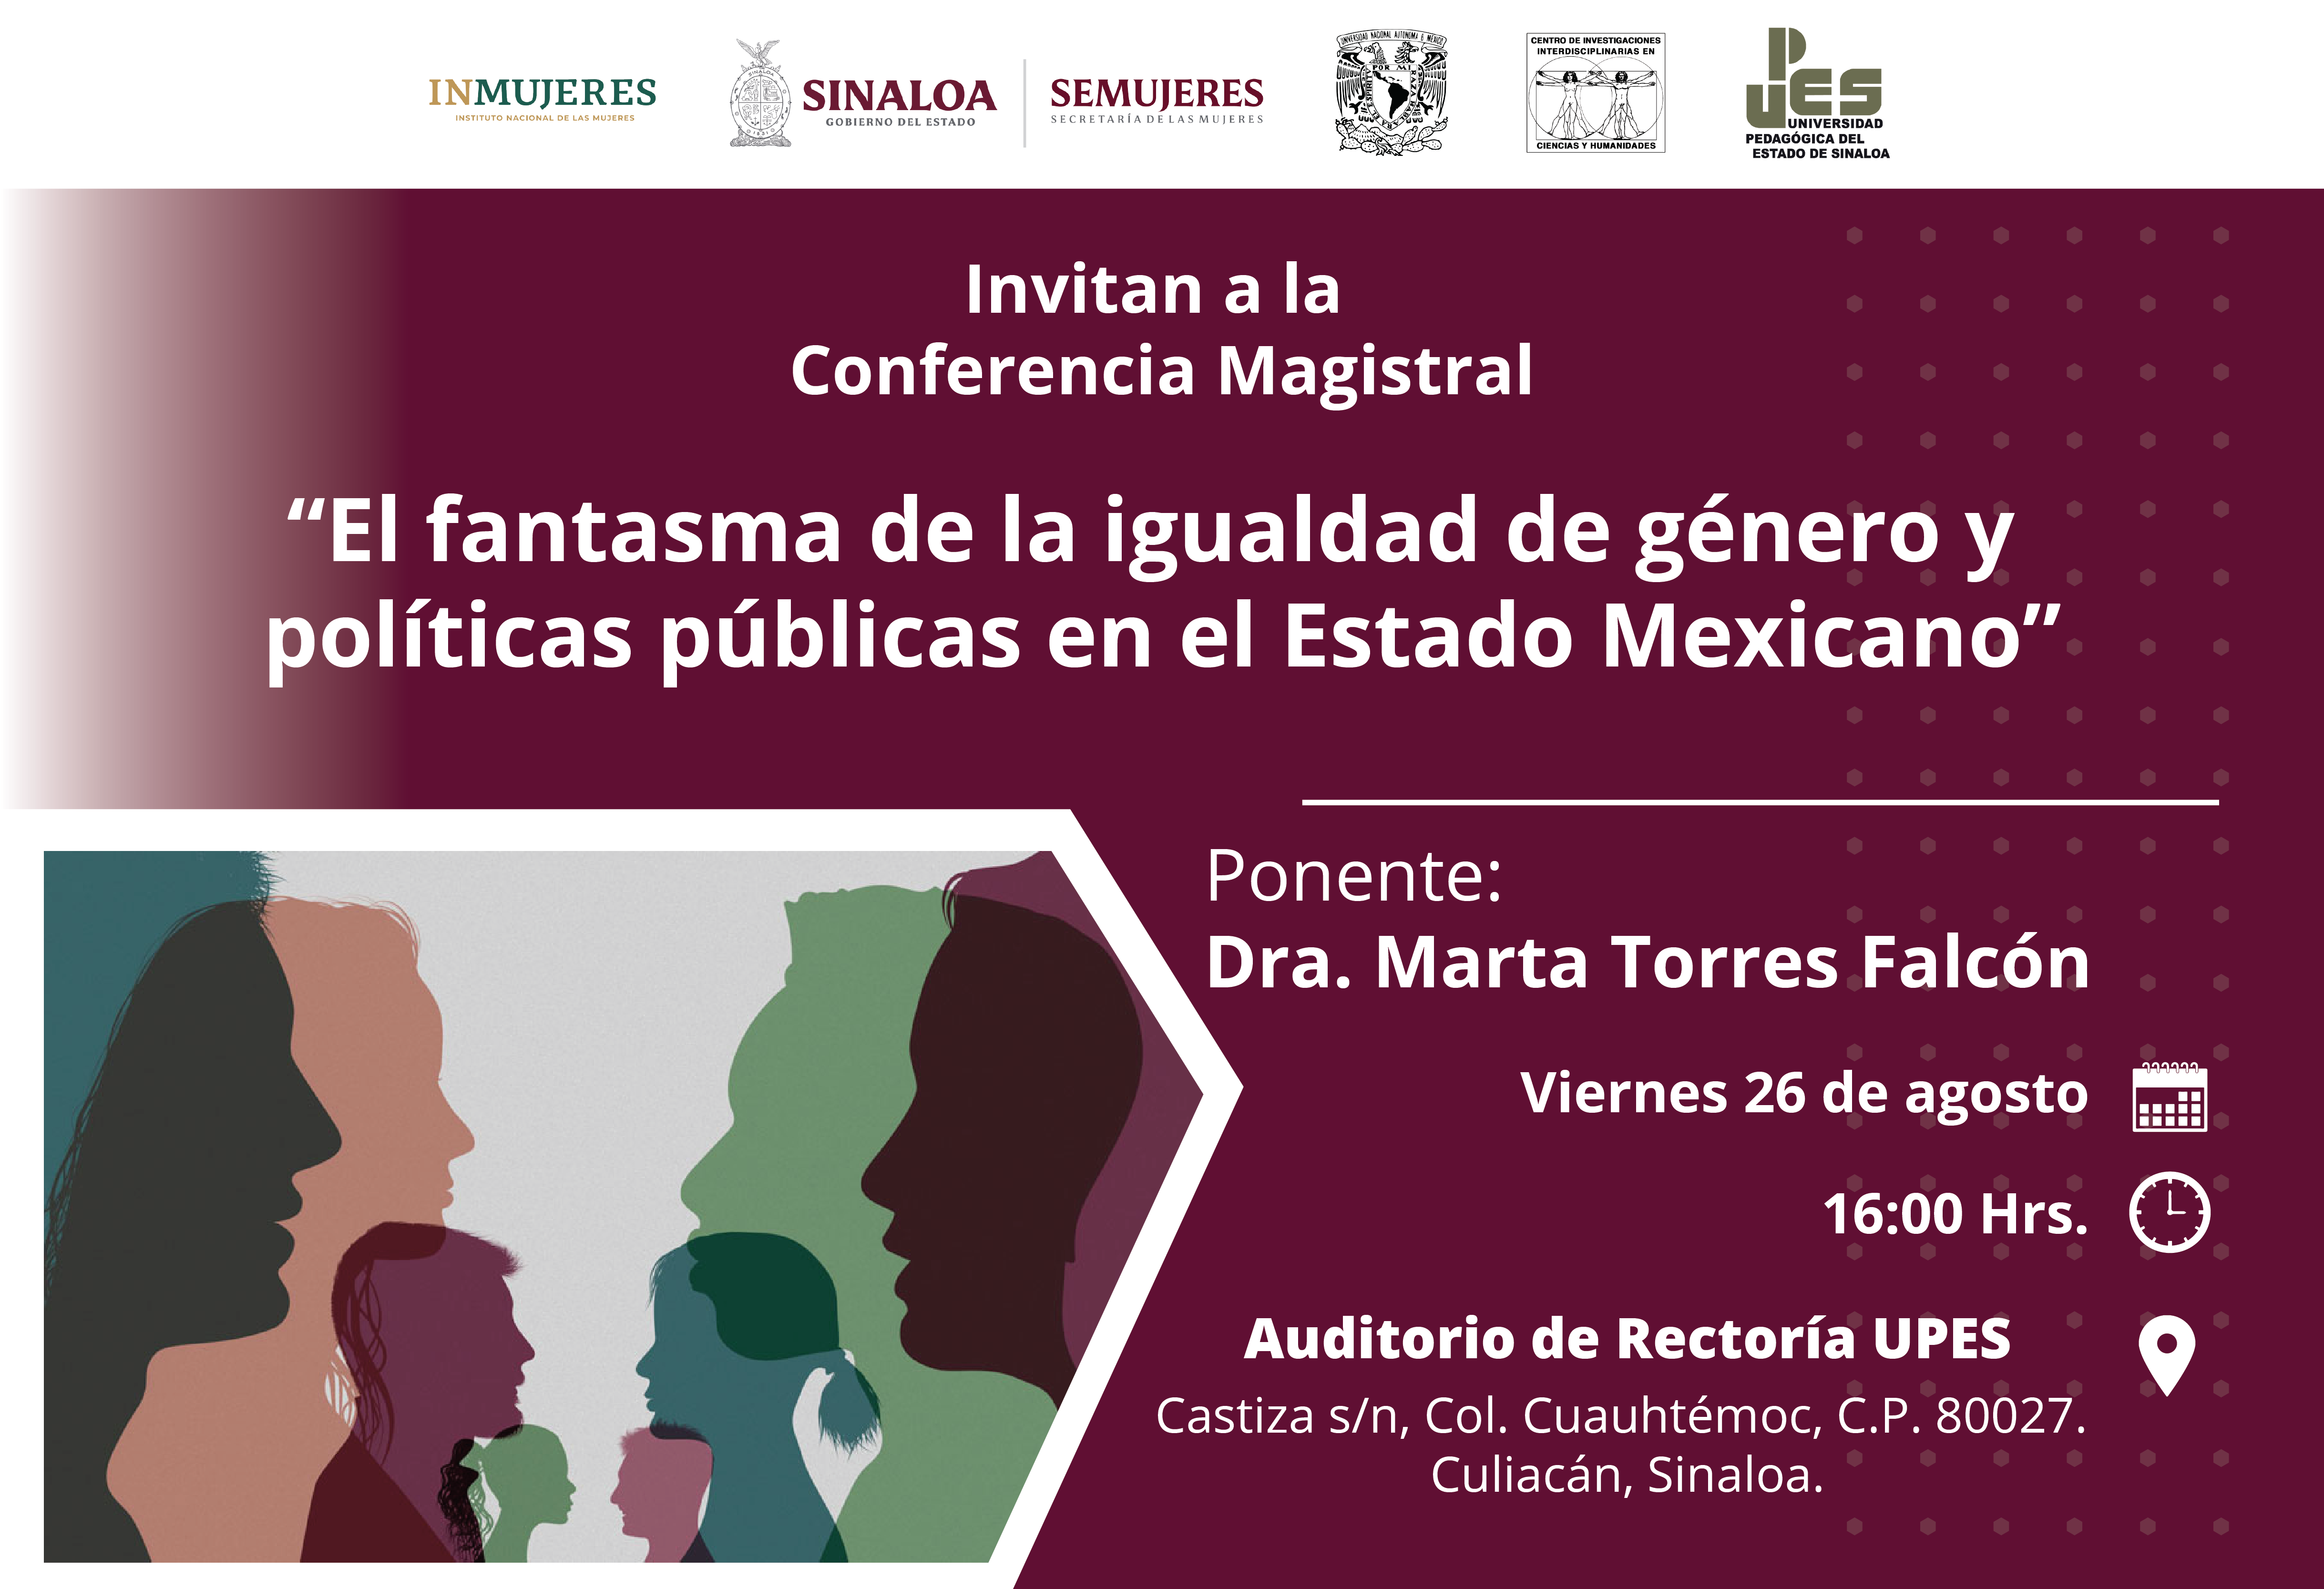 Upes invita a la conferencia magistral “El fantasma de la igualdad de género y políticas públicas en el Estado Mexicano”.